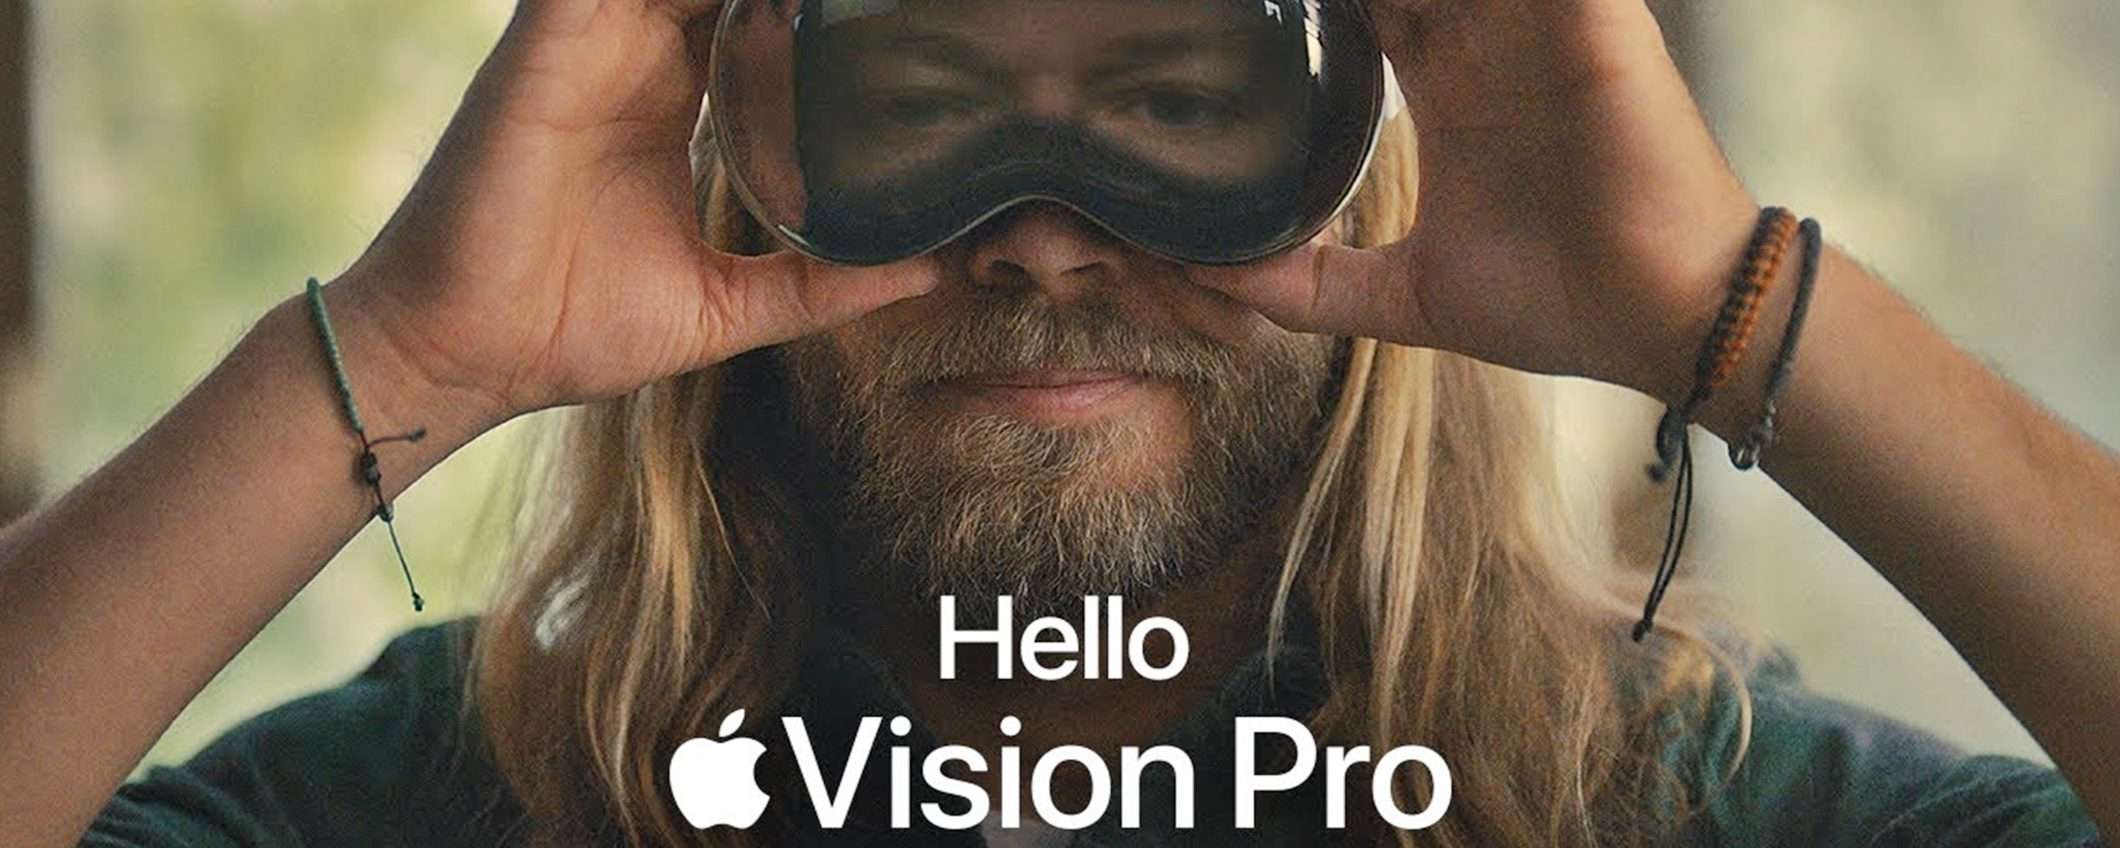 Apple lancia lo spot del Vision Pro disponibile da febbraio